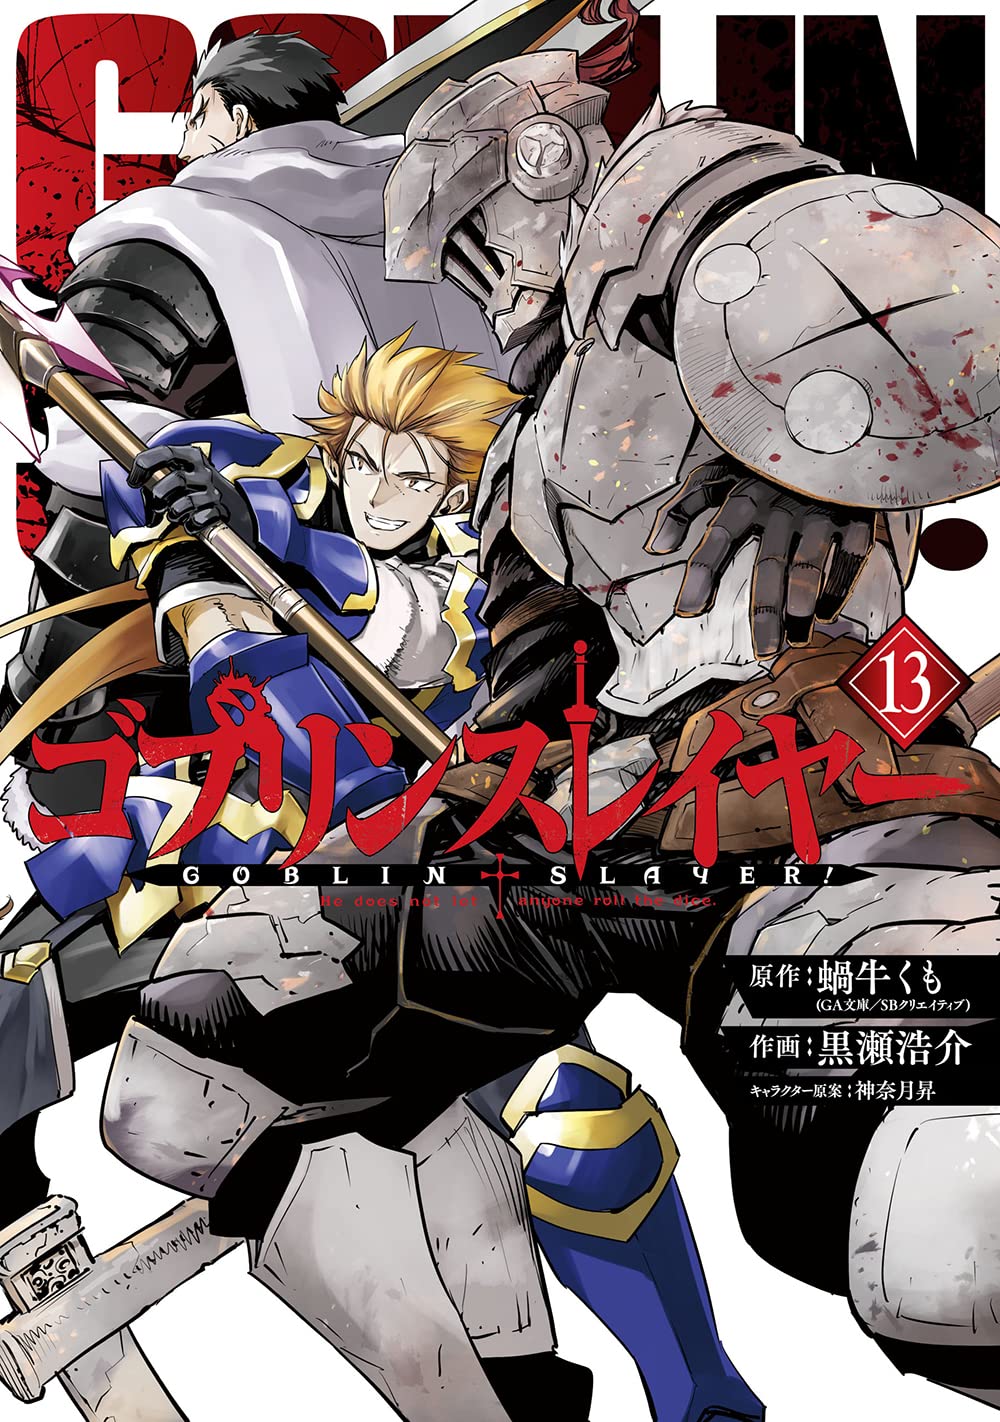 Light Novel Volume 10, Goblin Slayer Wiki